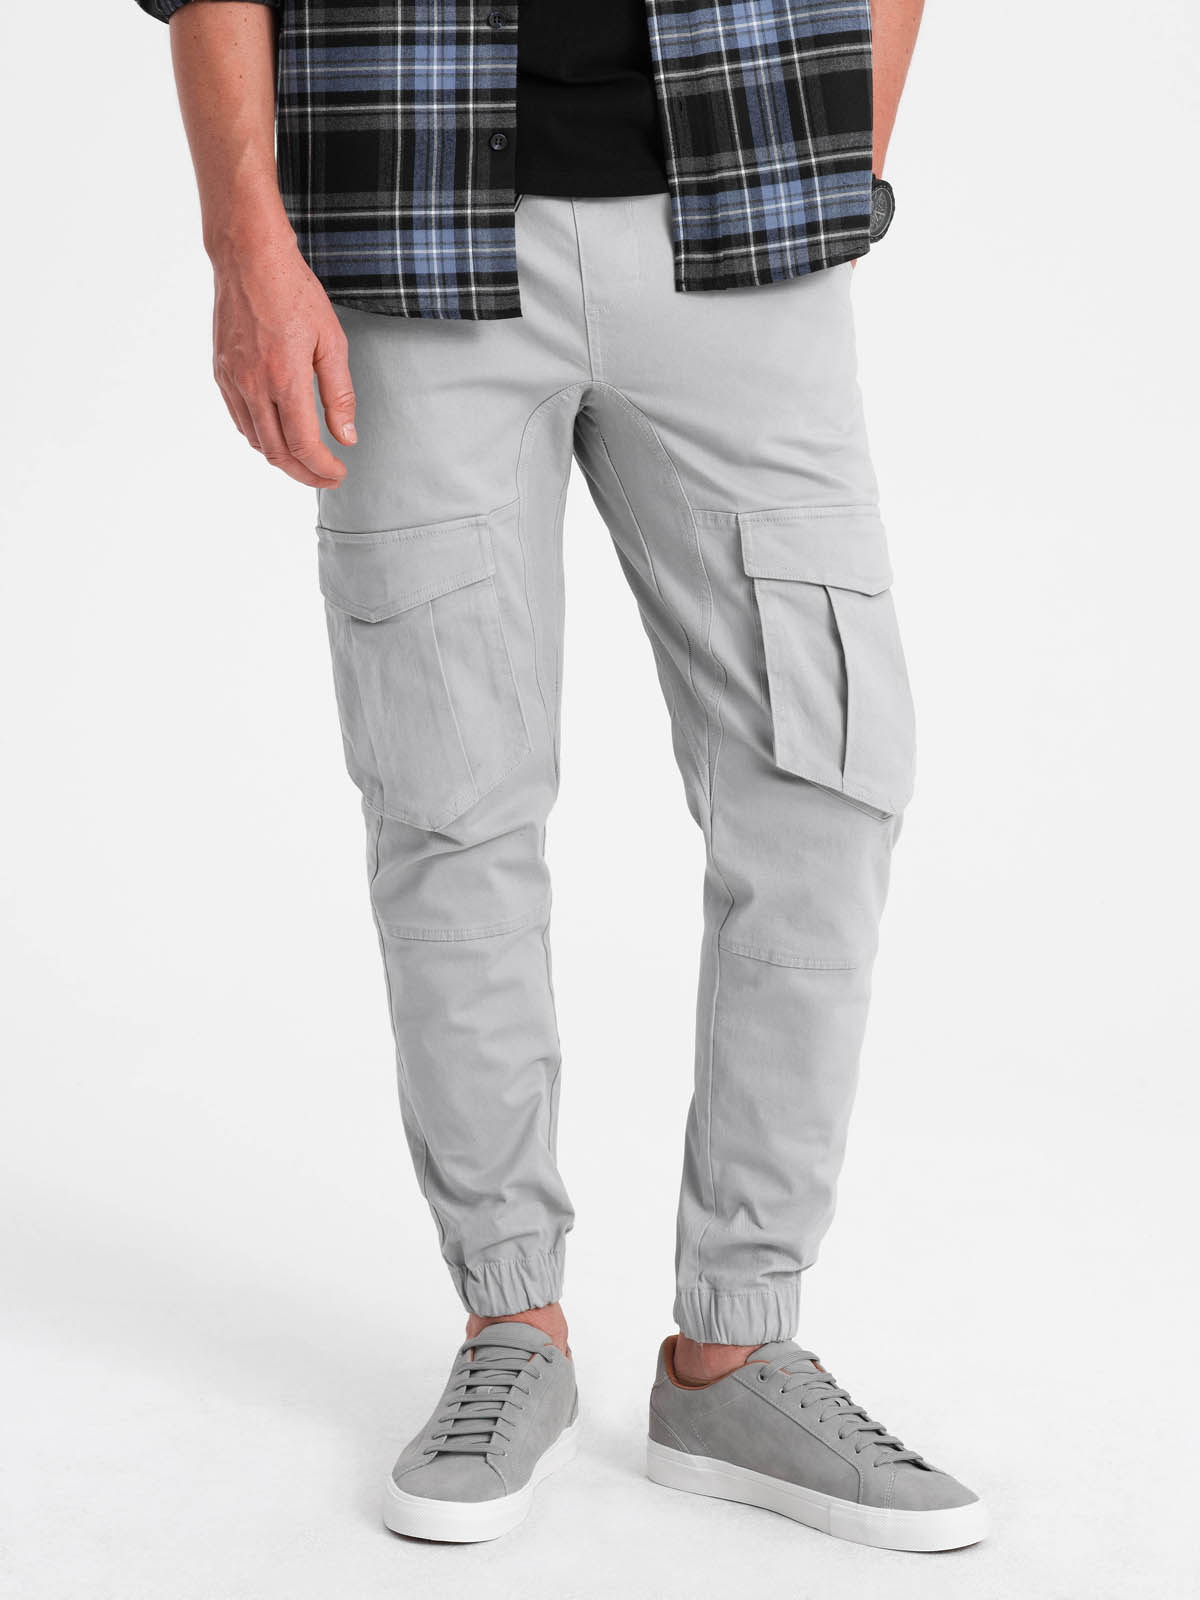 Men's pants joggers P886 - grey | MODONE wholesale - Clothing For Men